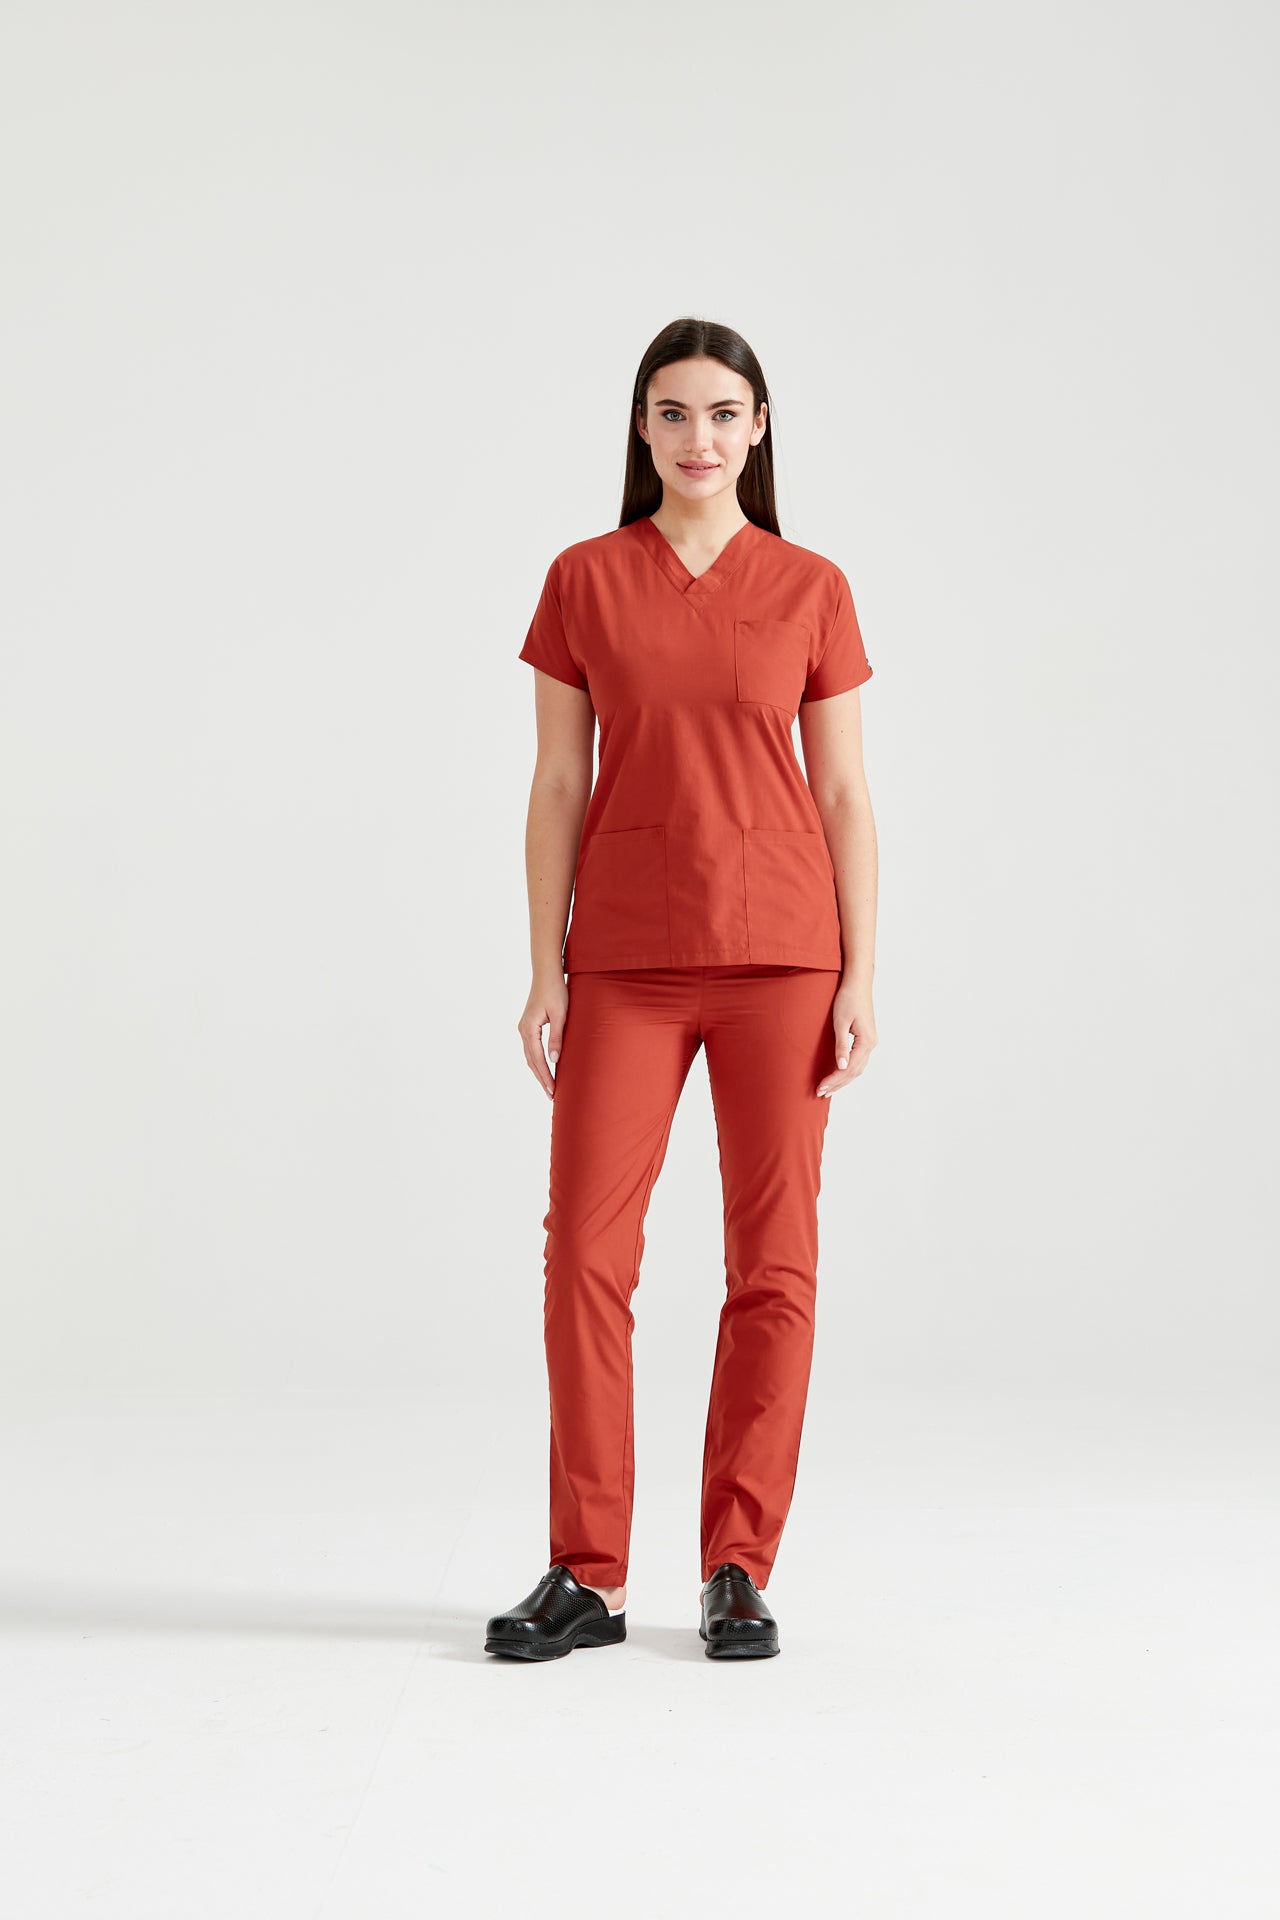 Asistenta medicala imbracata in costum medical rosu Classic Red, vedere din fata